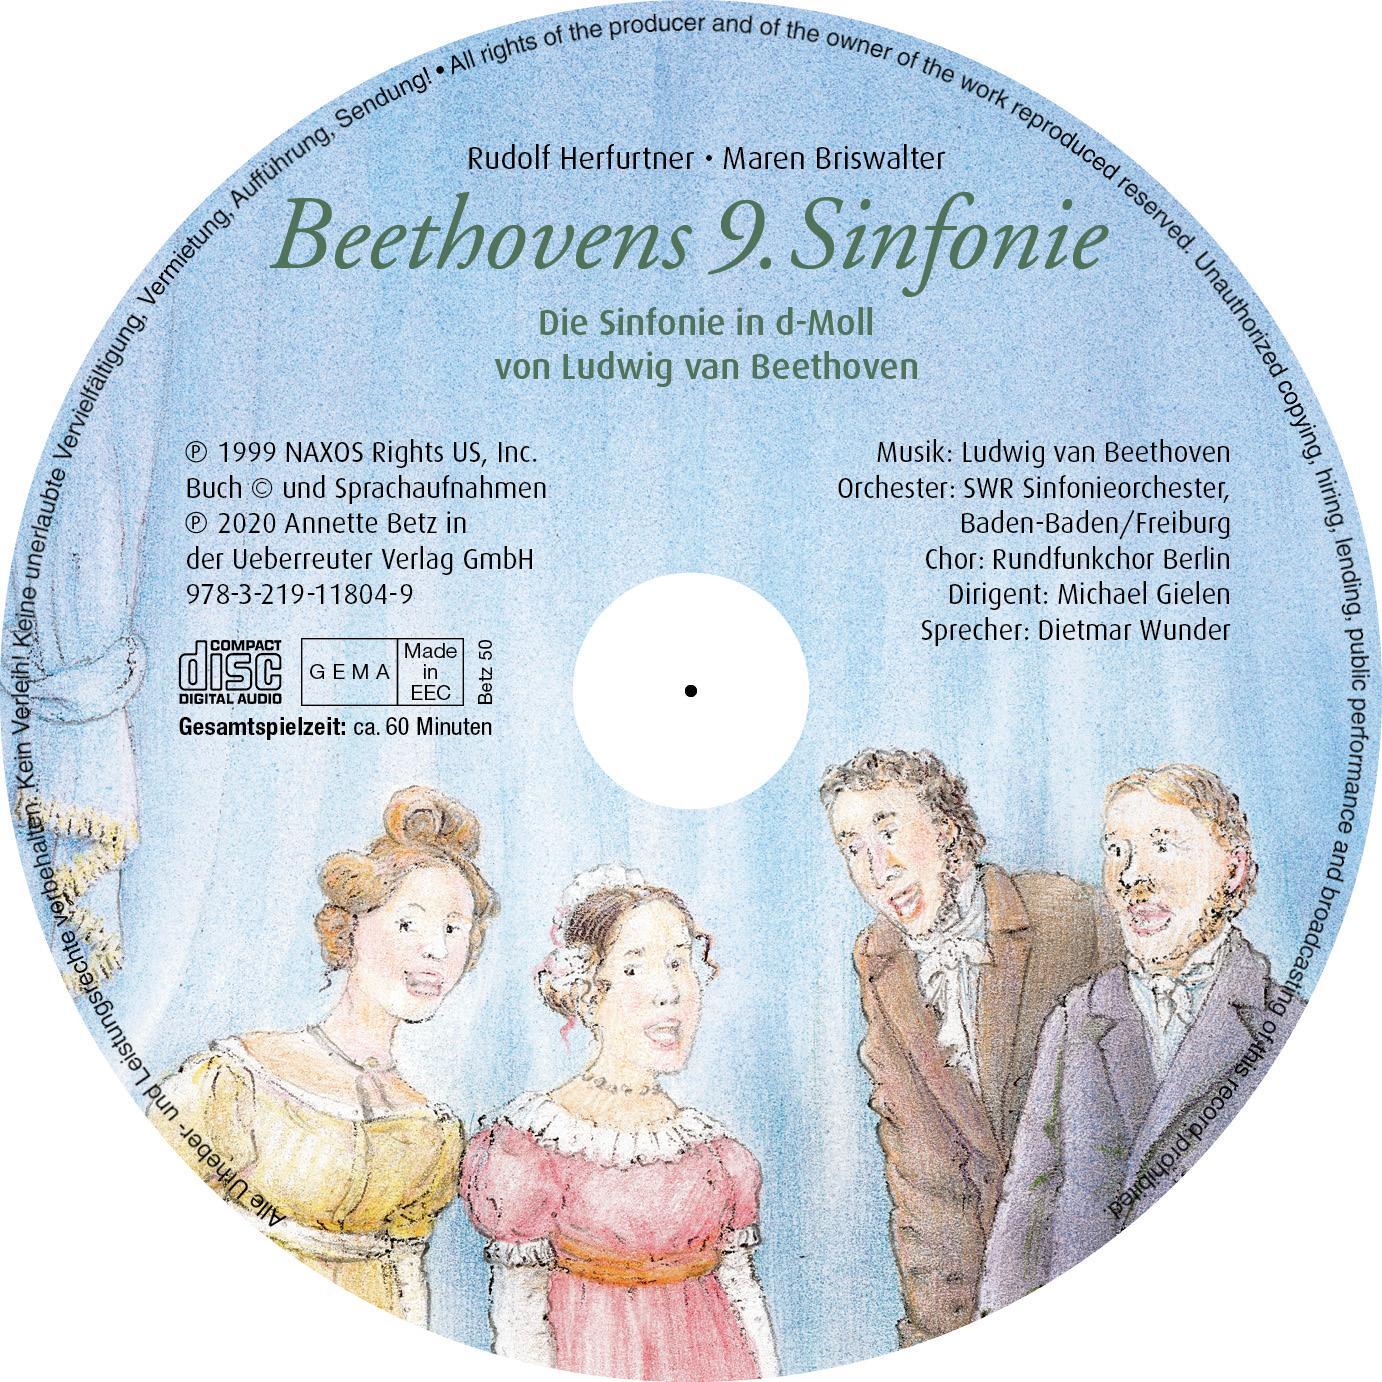 Bild: 9783219118049 | Beethovens 9. Sinfonie (Das musikalische Bilderbuch mit CD im Buch...